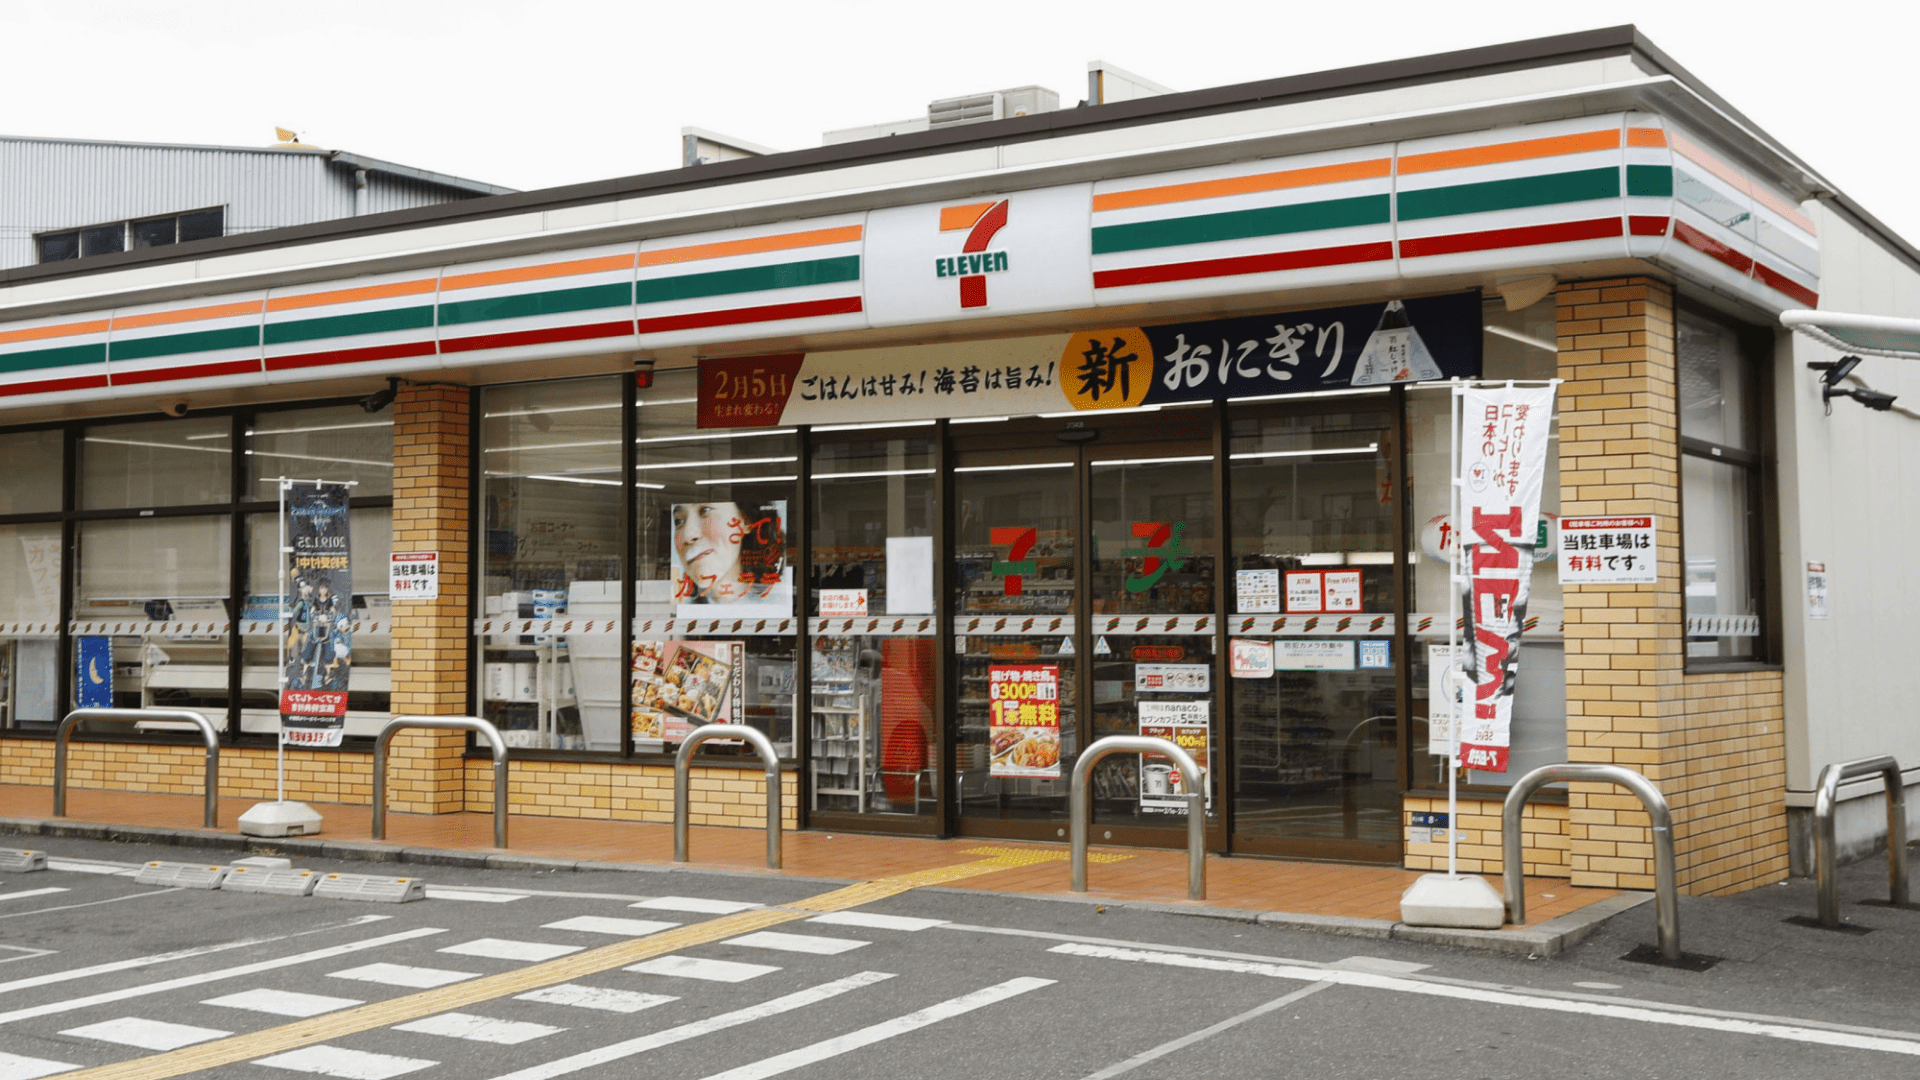 도쿄에 있을 때, 7-Elevens와 편의점에 대해 아는 모든 것을 잊어 버리십시오.